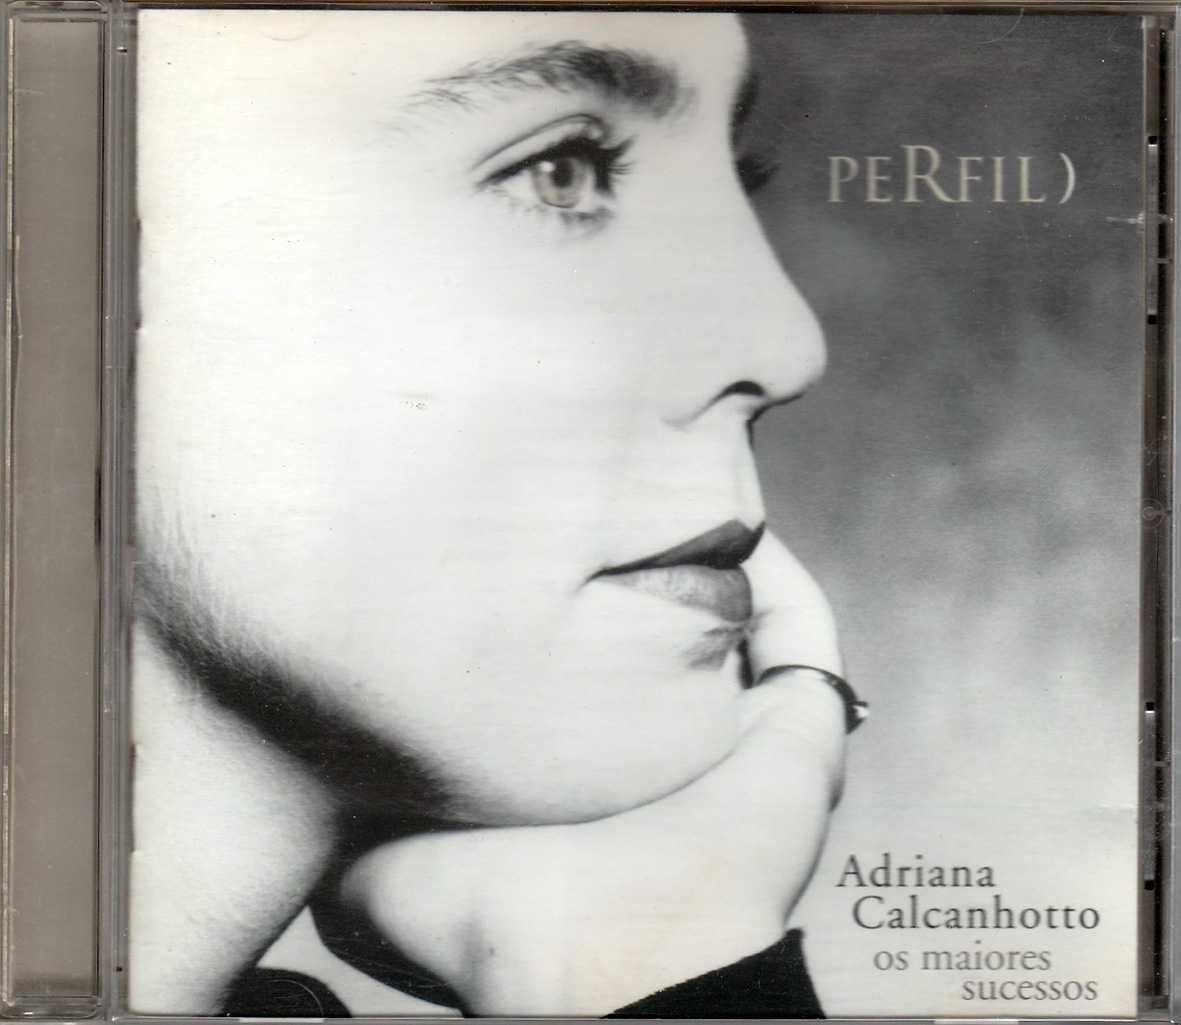 CD Adriana Calcanhotto - Perfil (Os Maiores Sucessos)